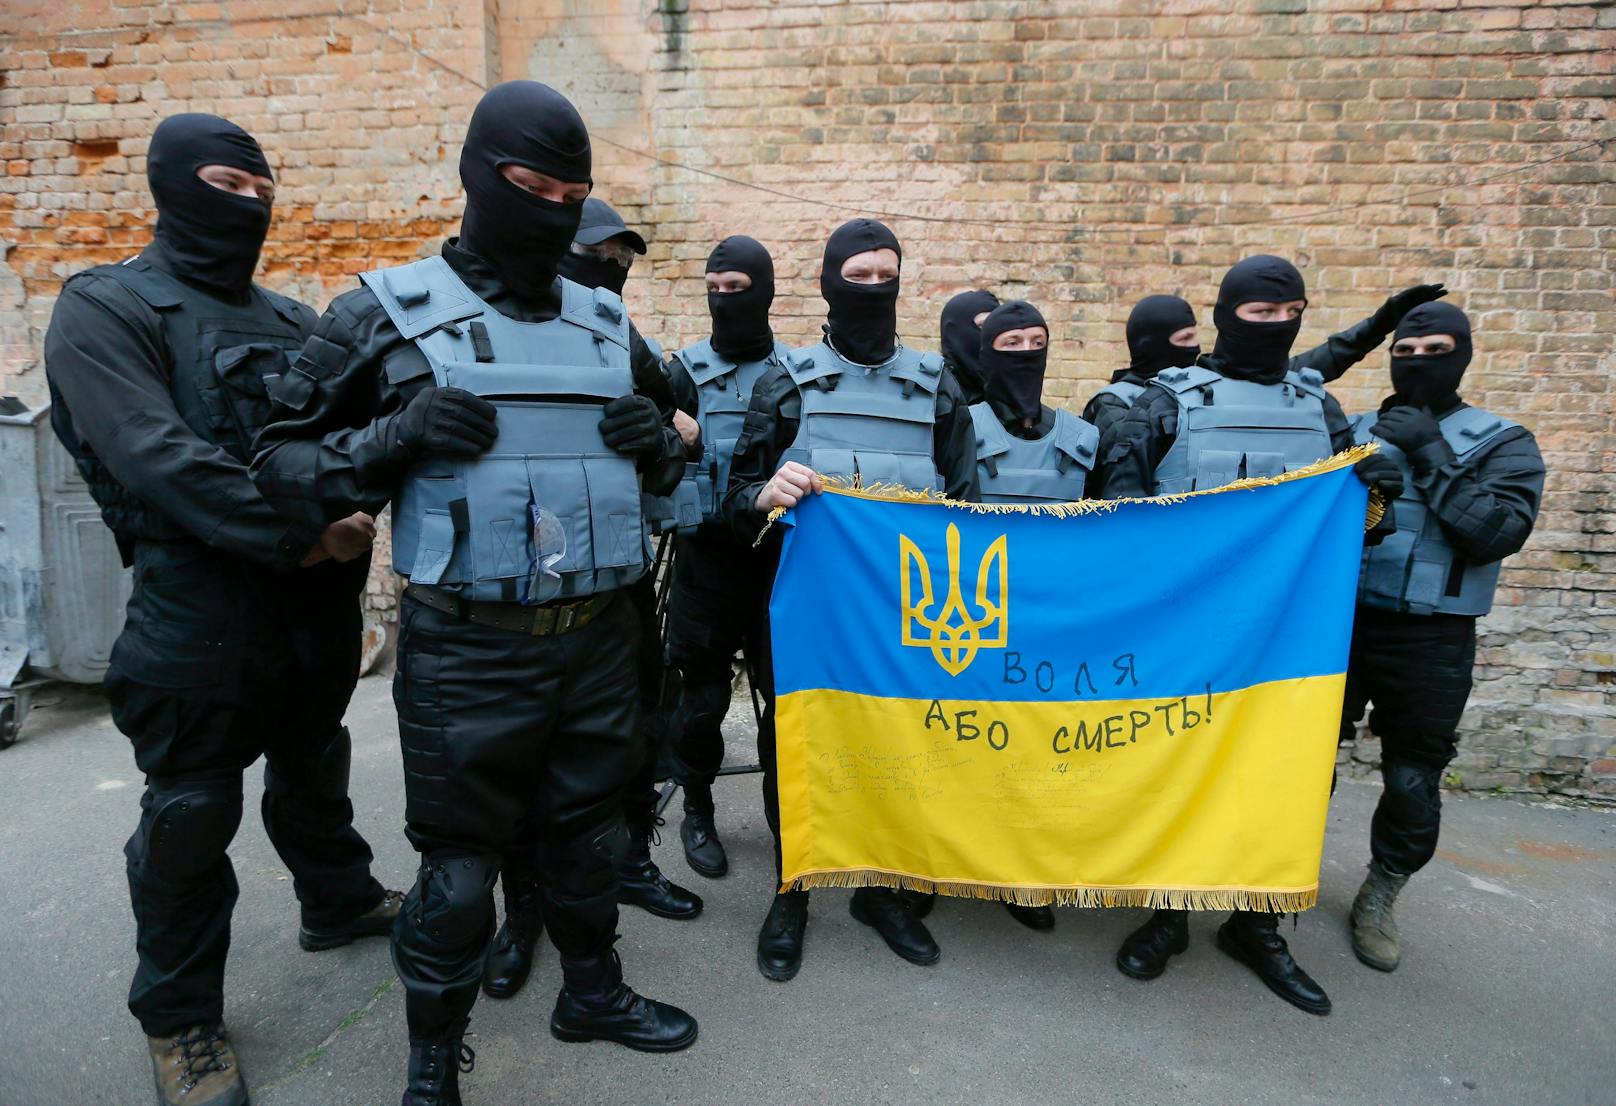 Seit 2014 ist das Neonazi-Bataillon "Asow" ein Teil der offiziellen Streitkräfte der Ukraine und kämpft gegen pro-russische Seperatisten im Donbass.